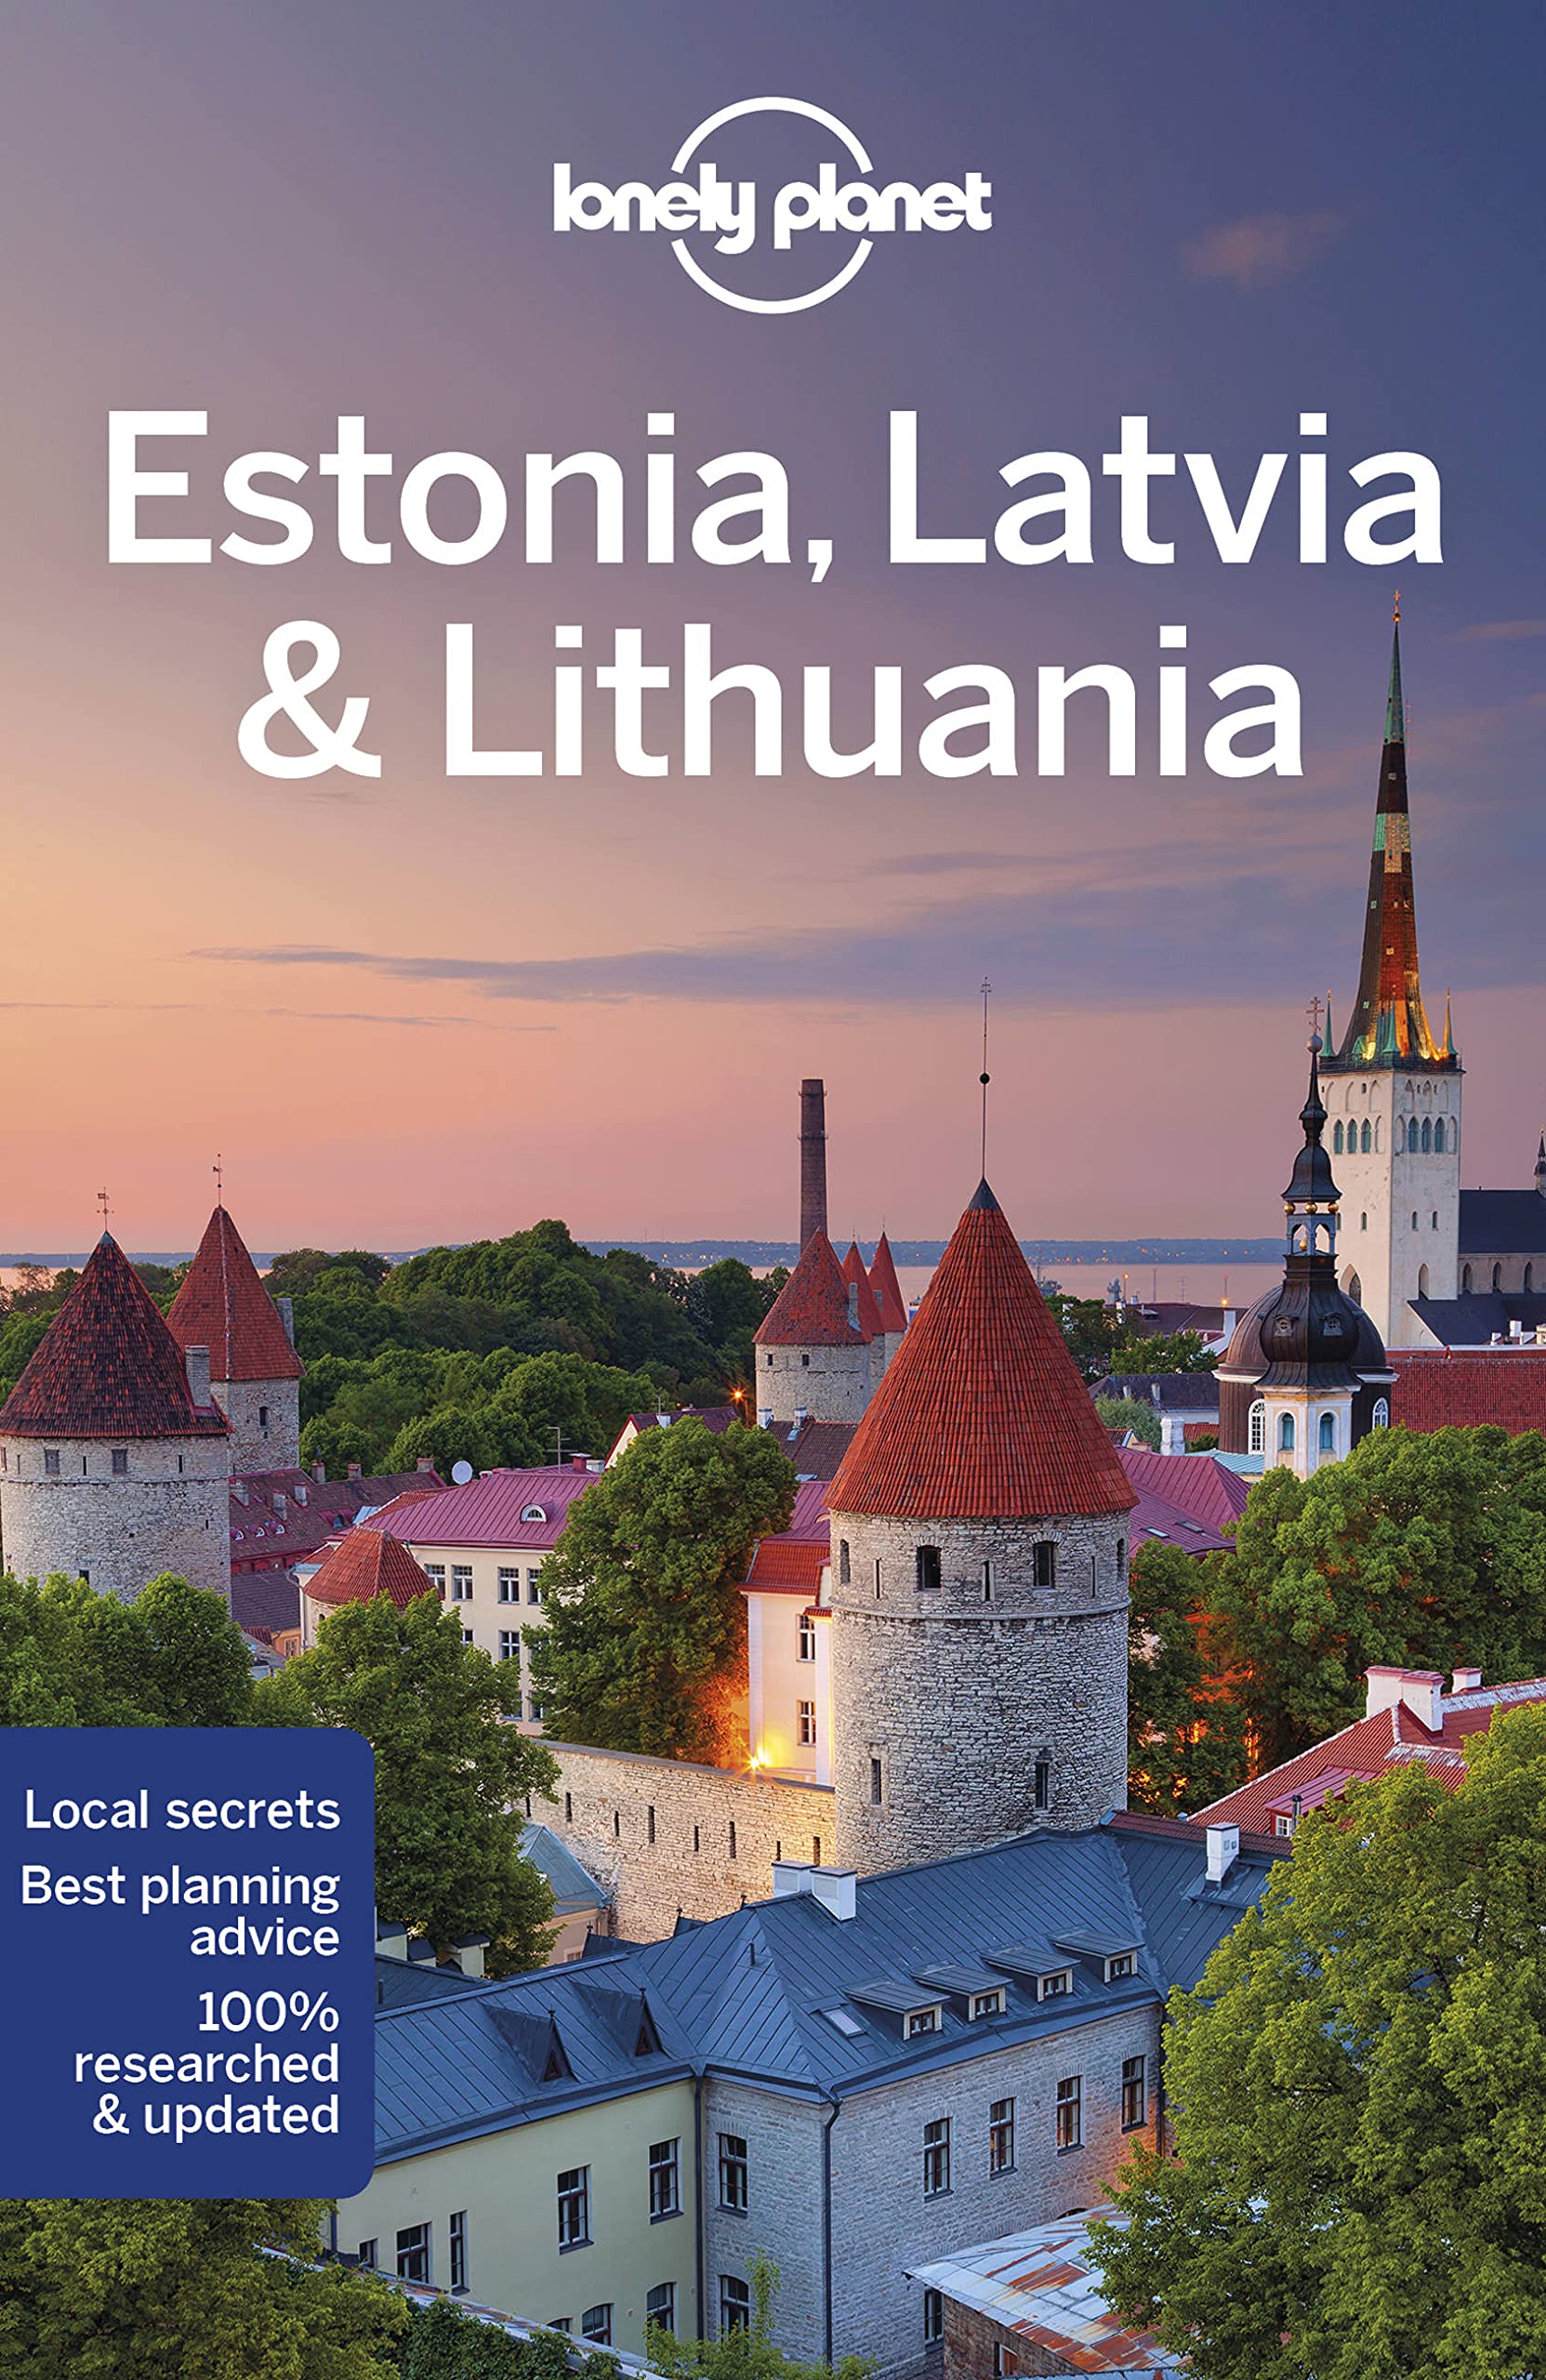 Estonia, Latvia, Lithuania Lonely Planet 9e